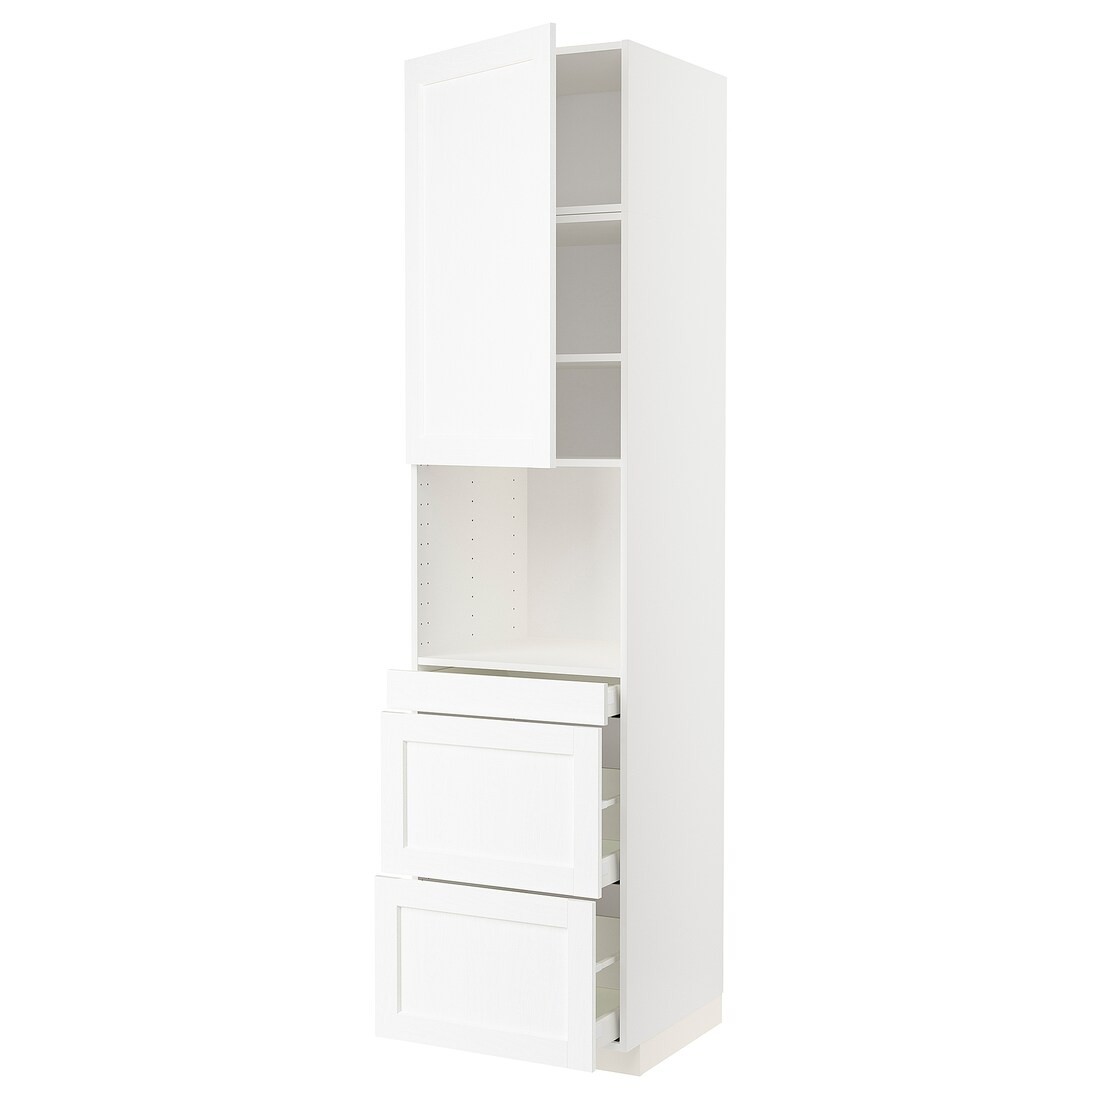 METOD МЕТОД / MAXIMERA МАКСИМЕРА Высокий шкаф для СВЧ / дверца / 3 ящика, белый Enköping / белый имитация дерева, 60x60x240 см